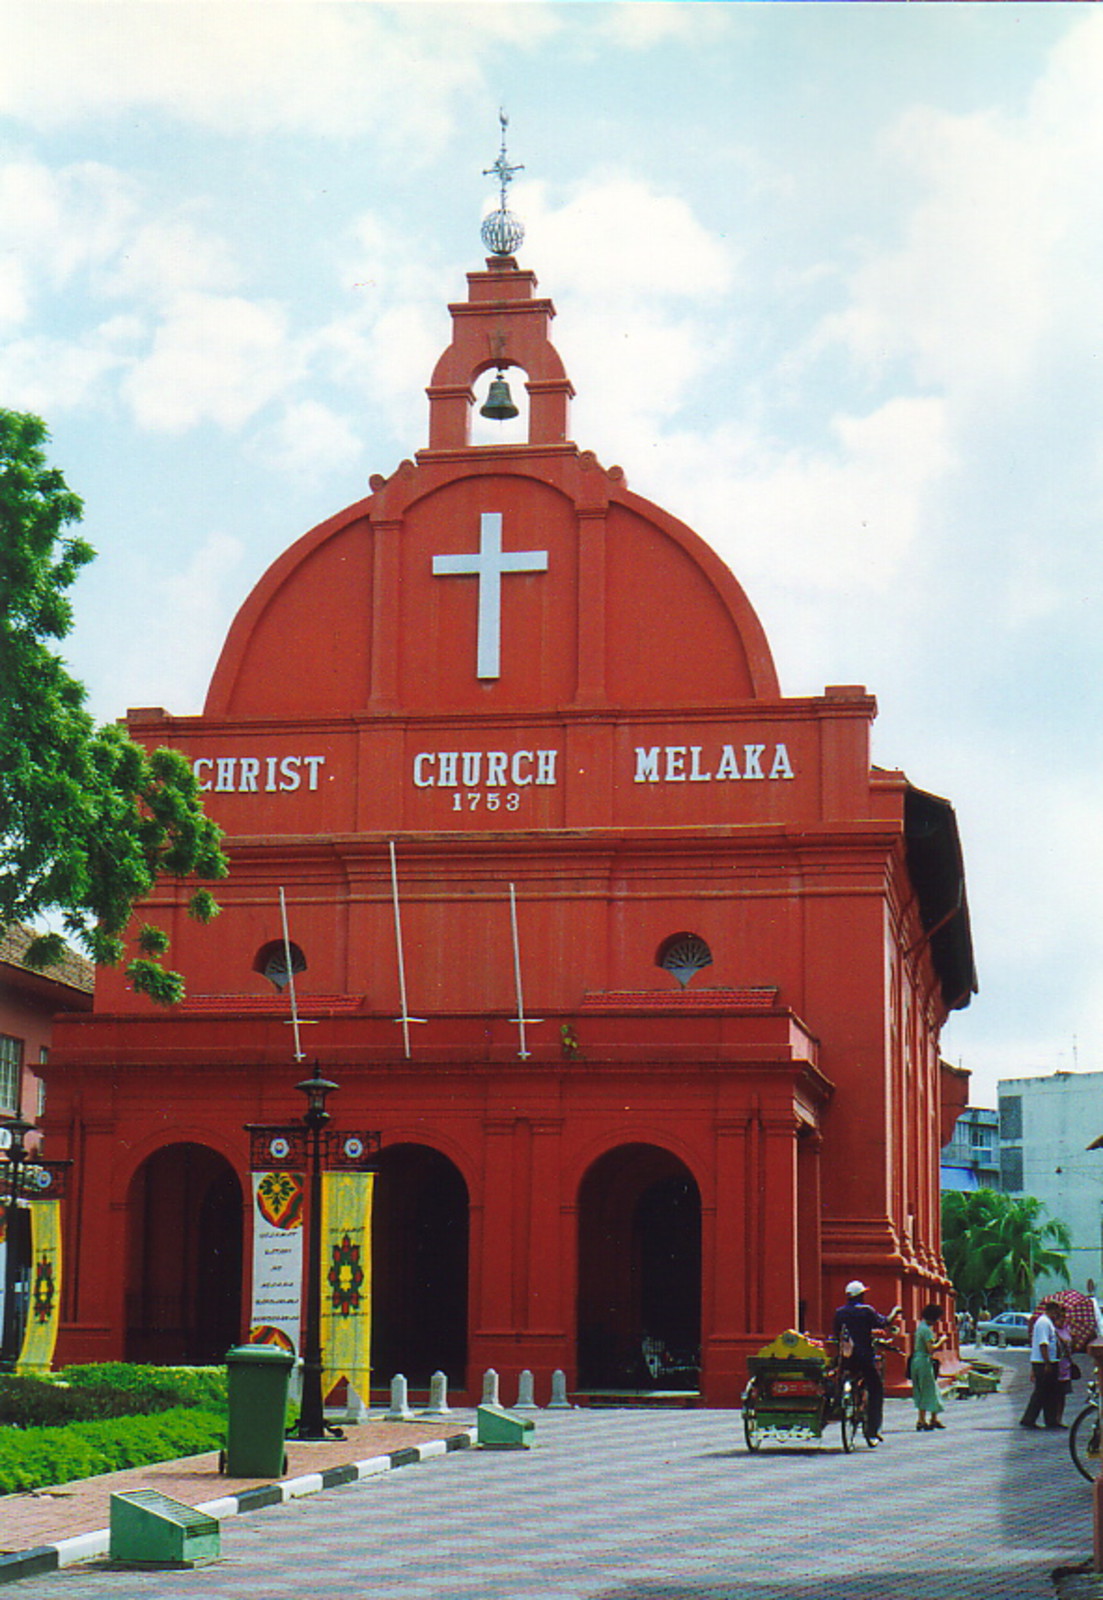 Melaka's Christ Church